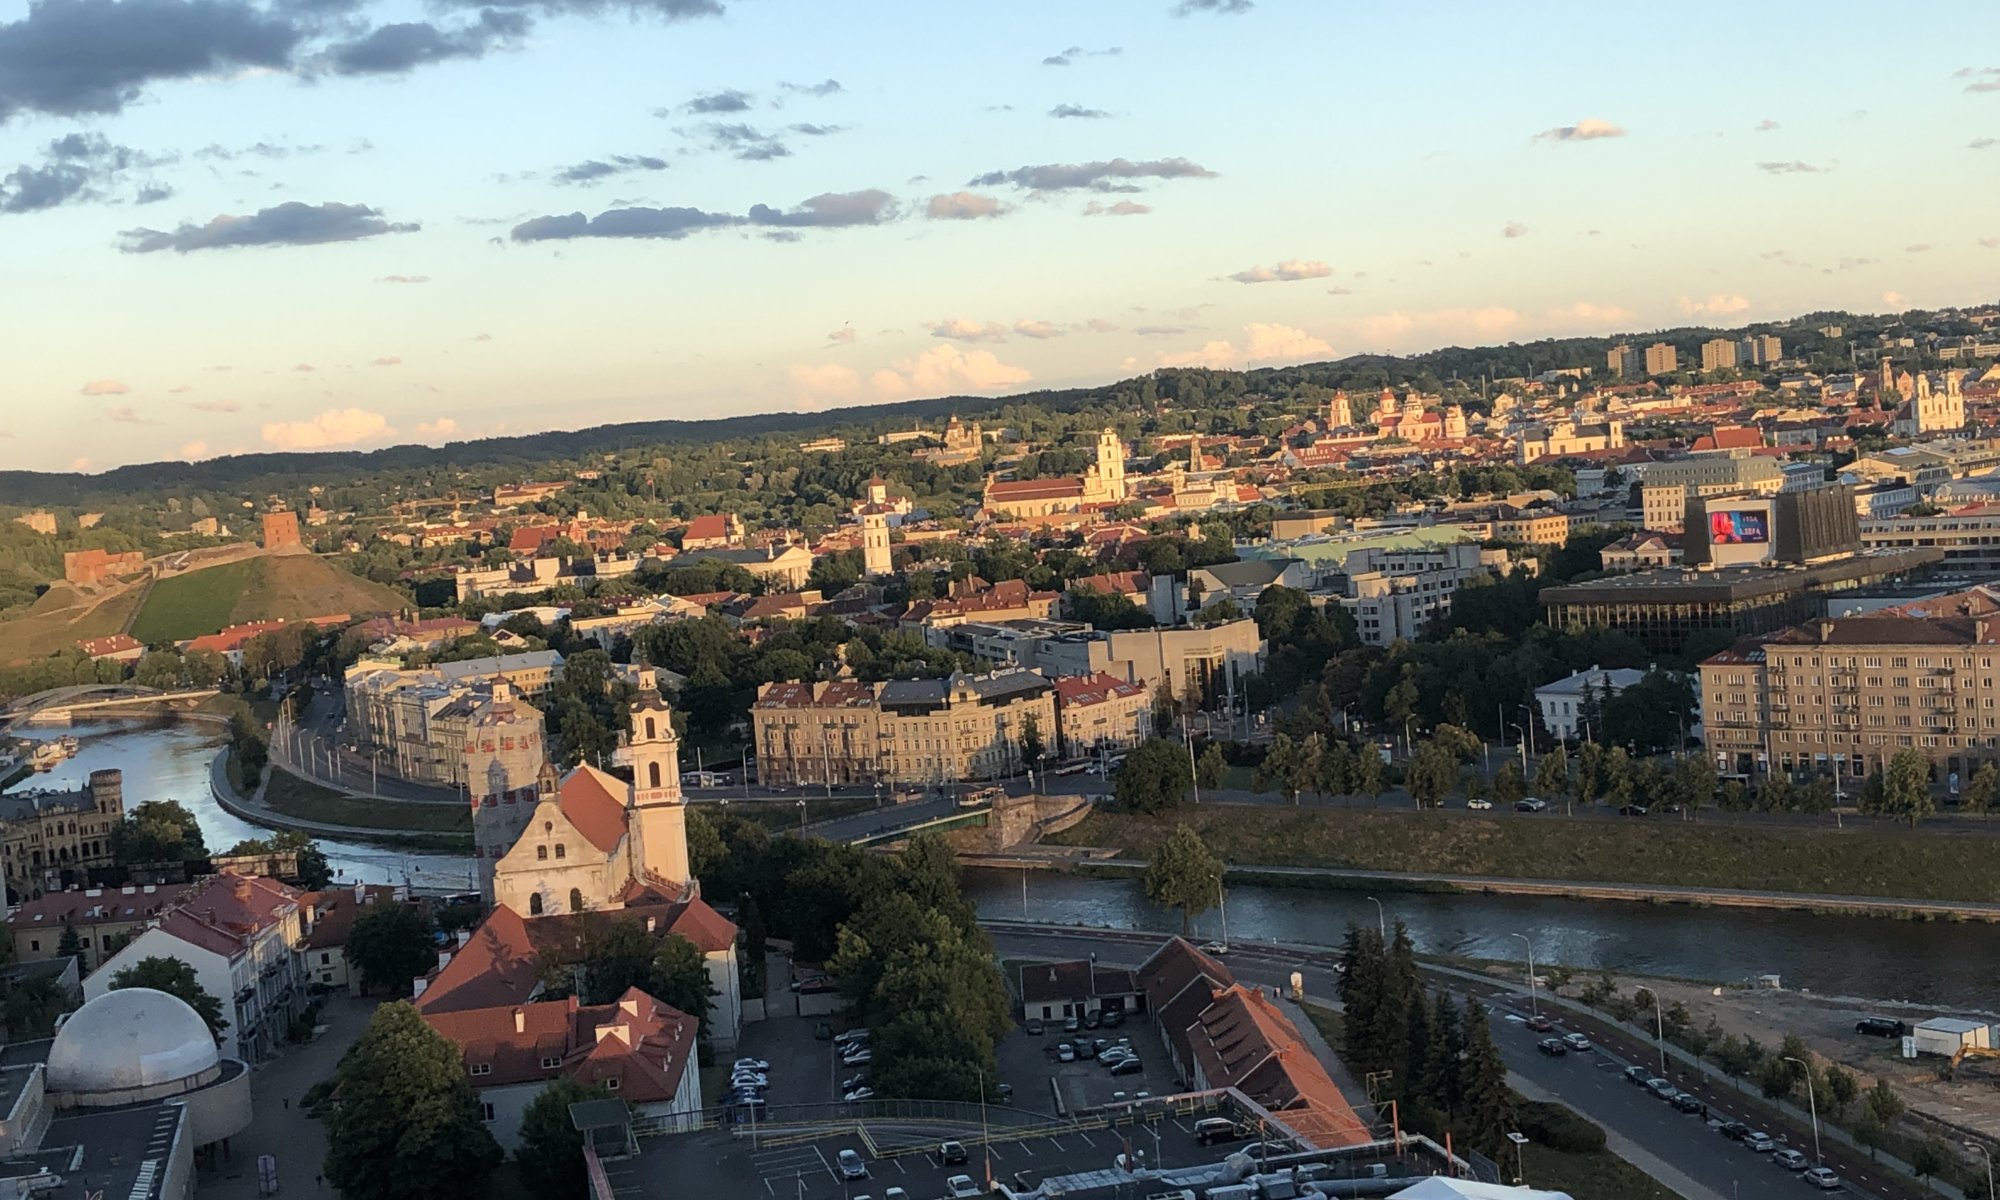 Old town, Vilnius